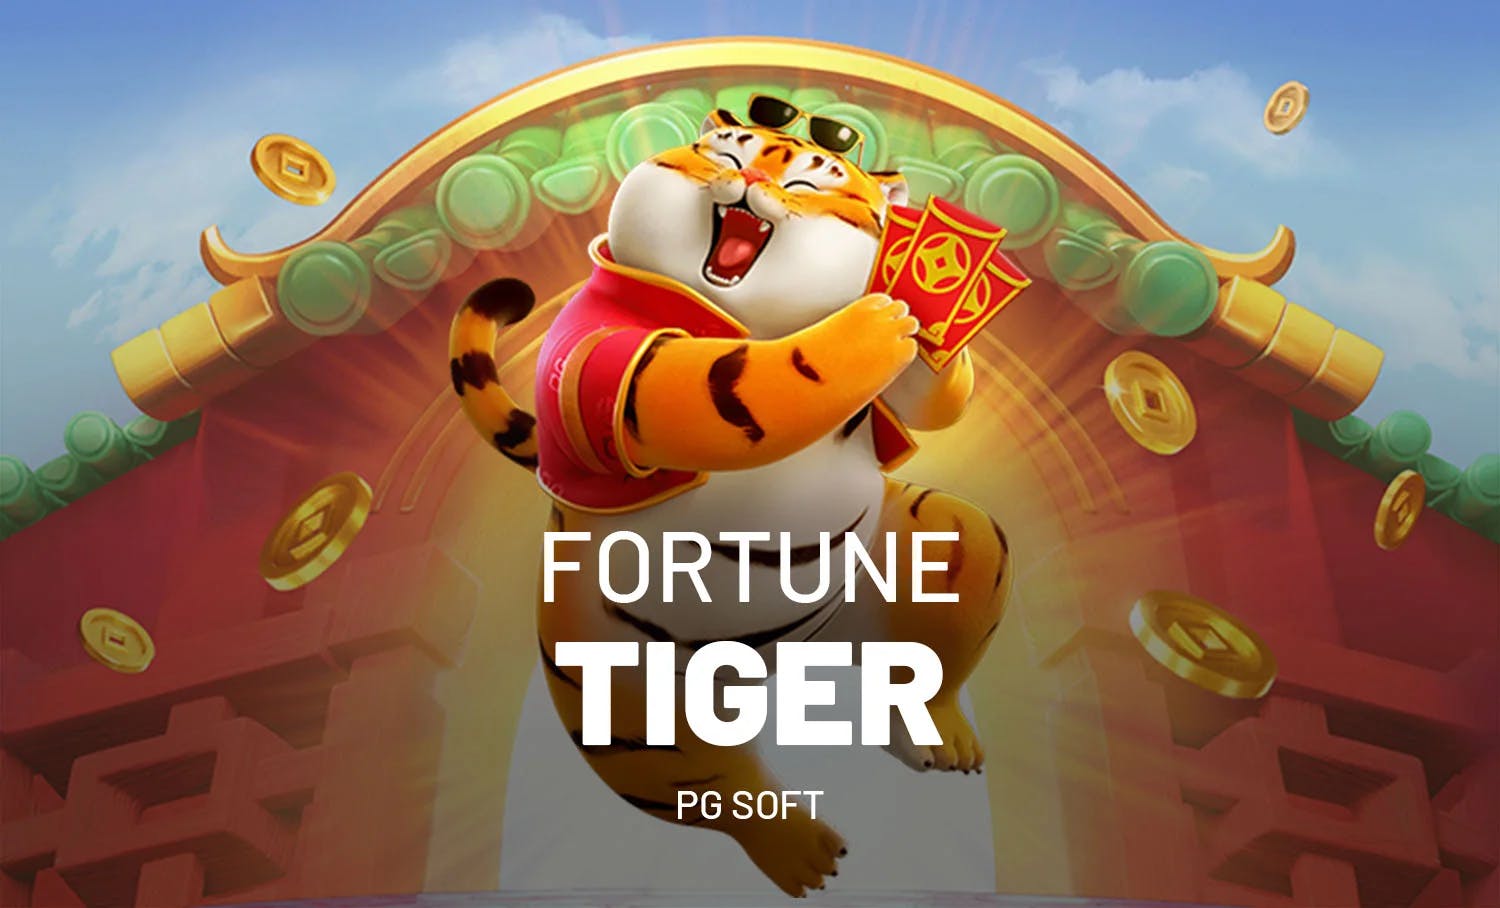 Tela de jogo do Fortune Tiger